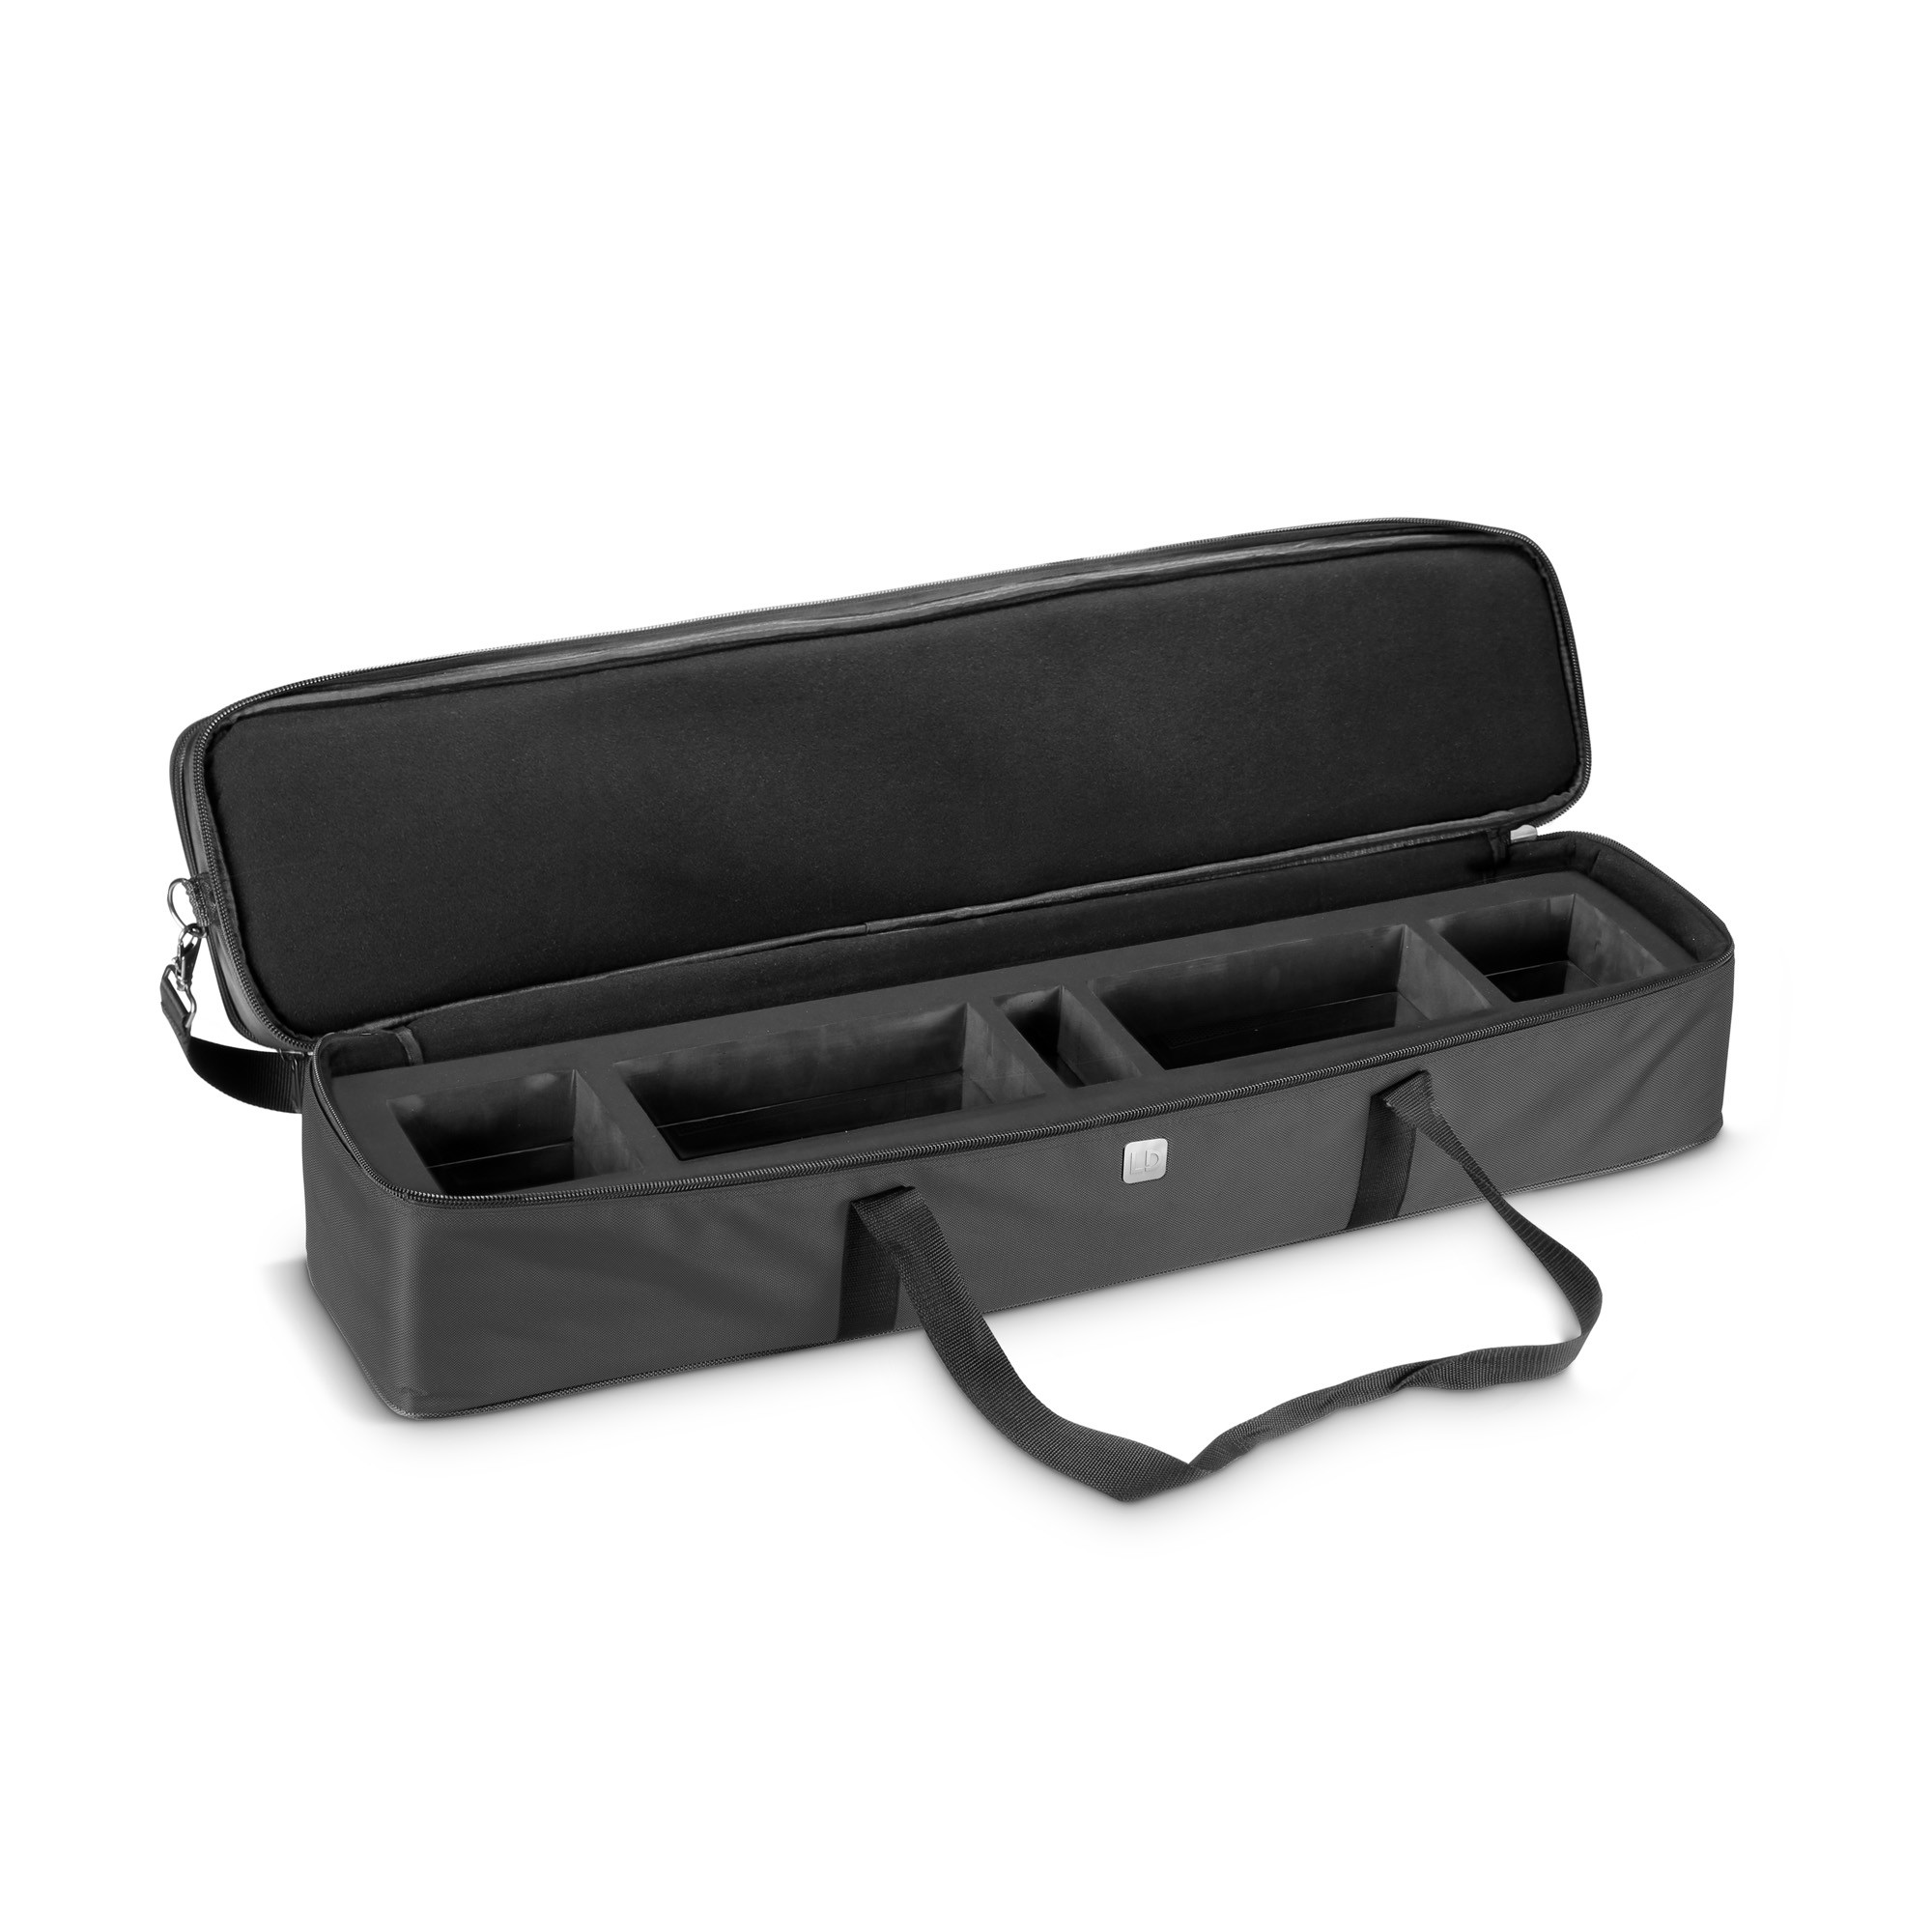 Ld Systems Curv 500 Ts Sat Bag - Bag for speakers & subwoofer - Variation 2